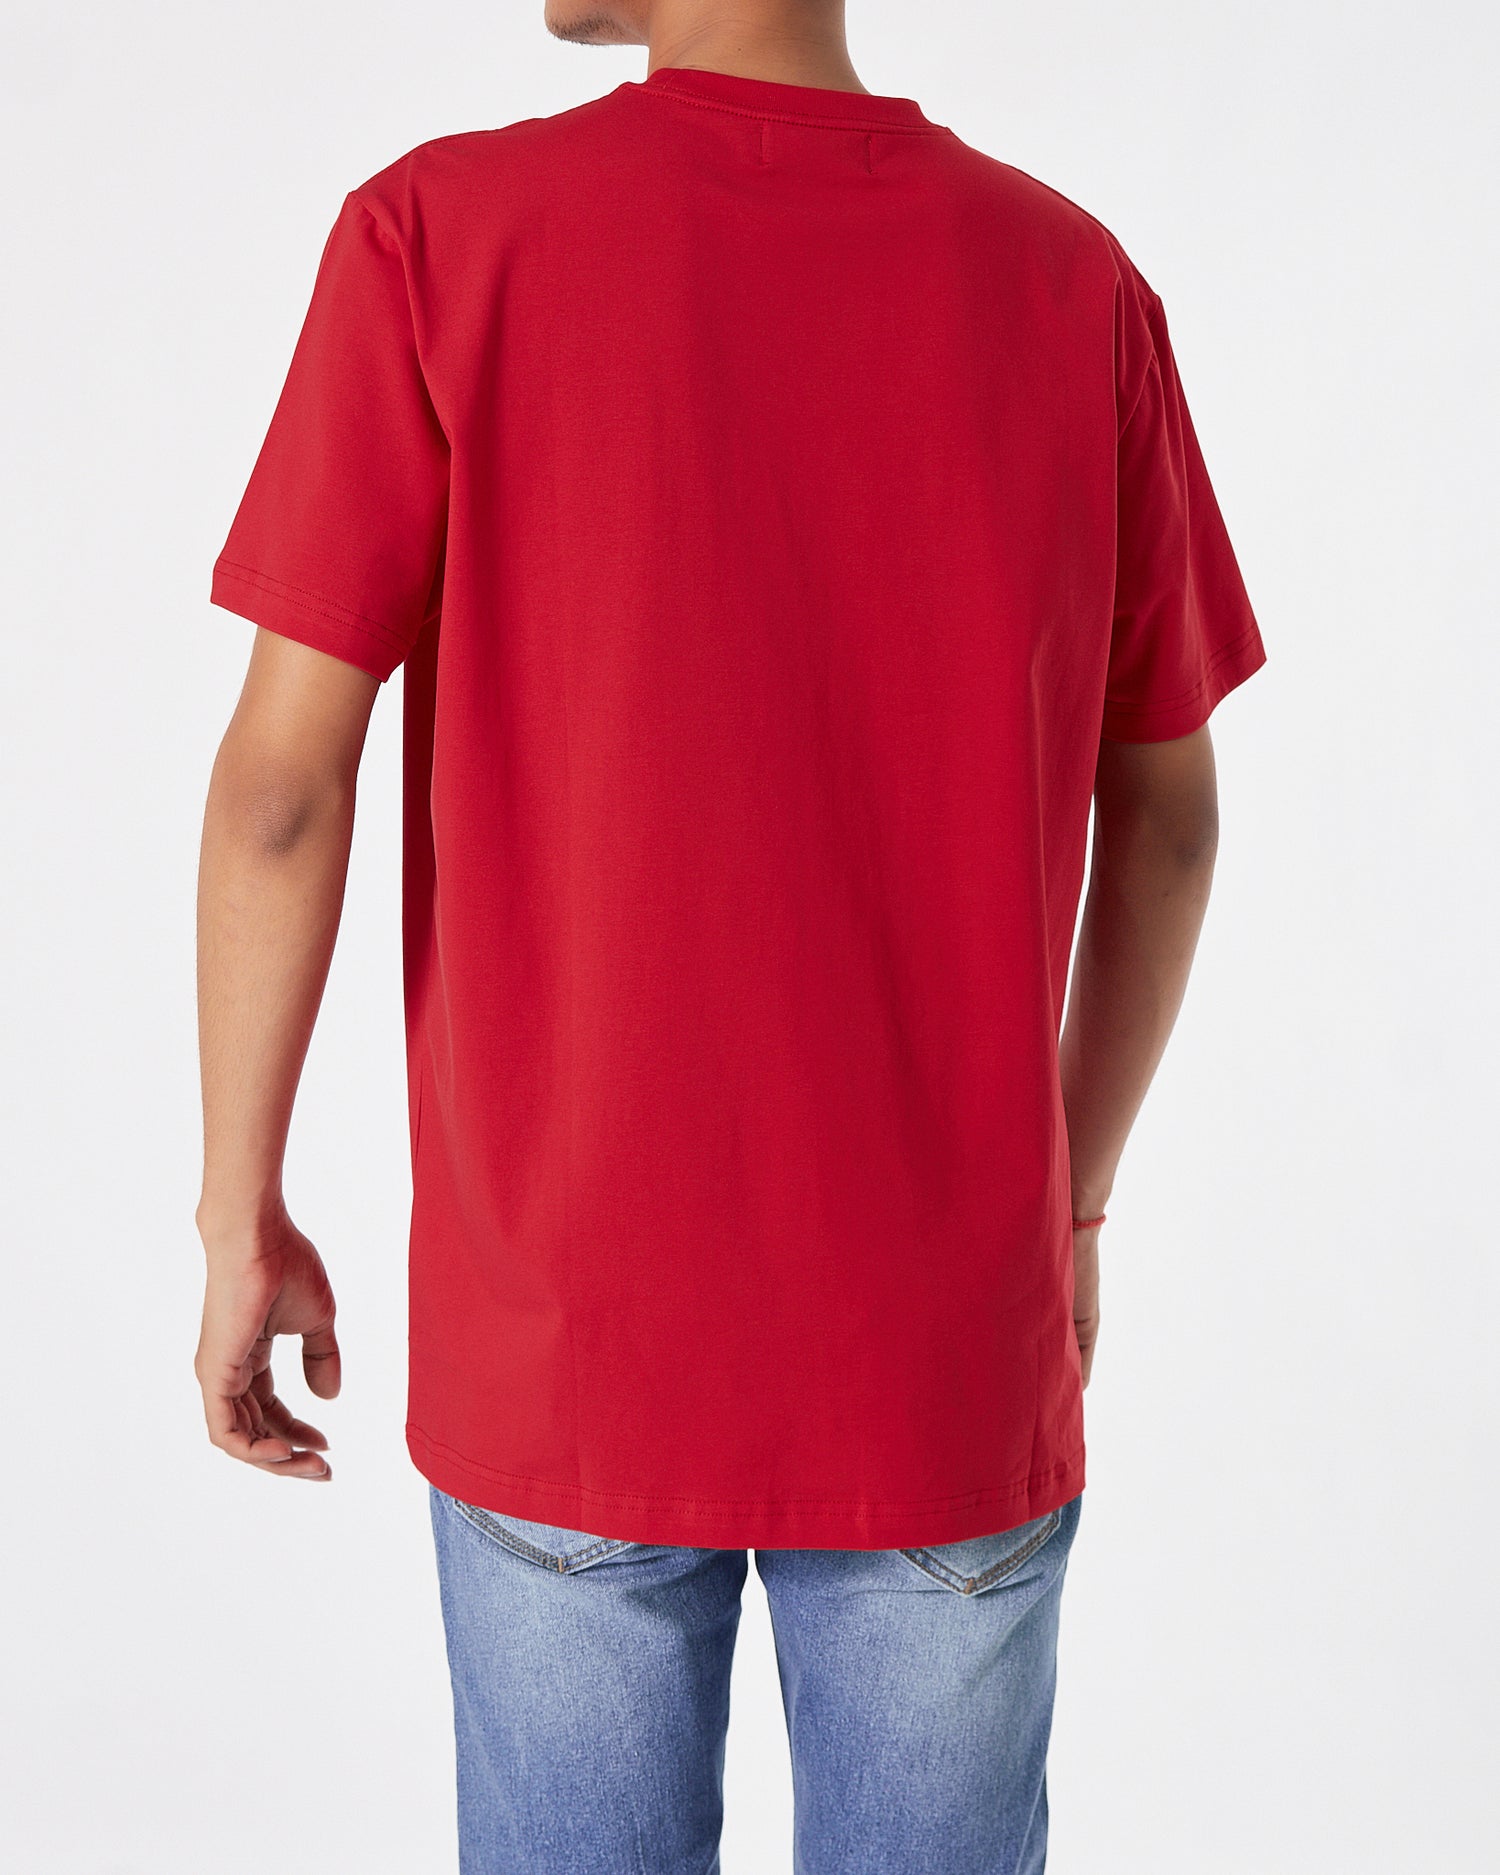 VER Signature Logo Printed Men Red T-Shirt 16.90